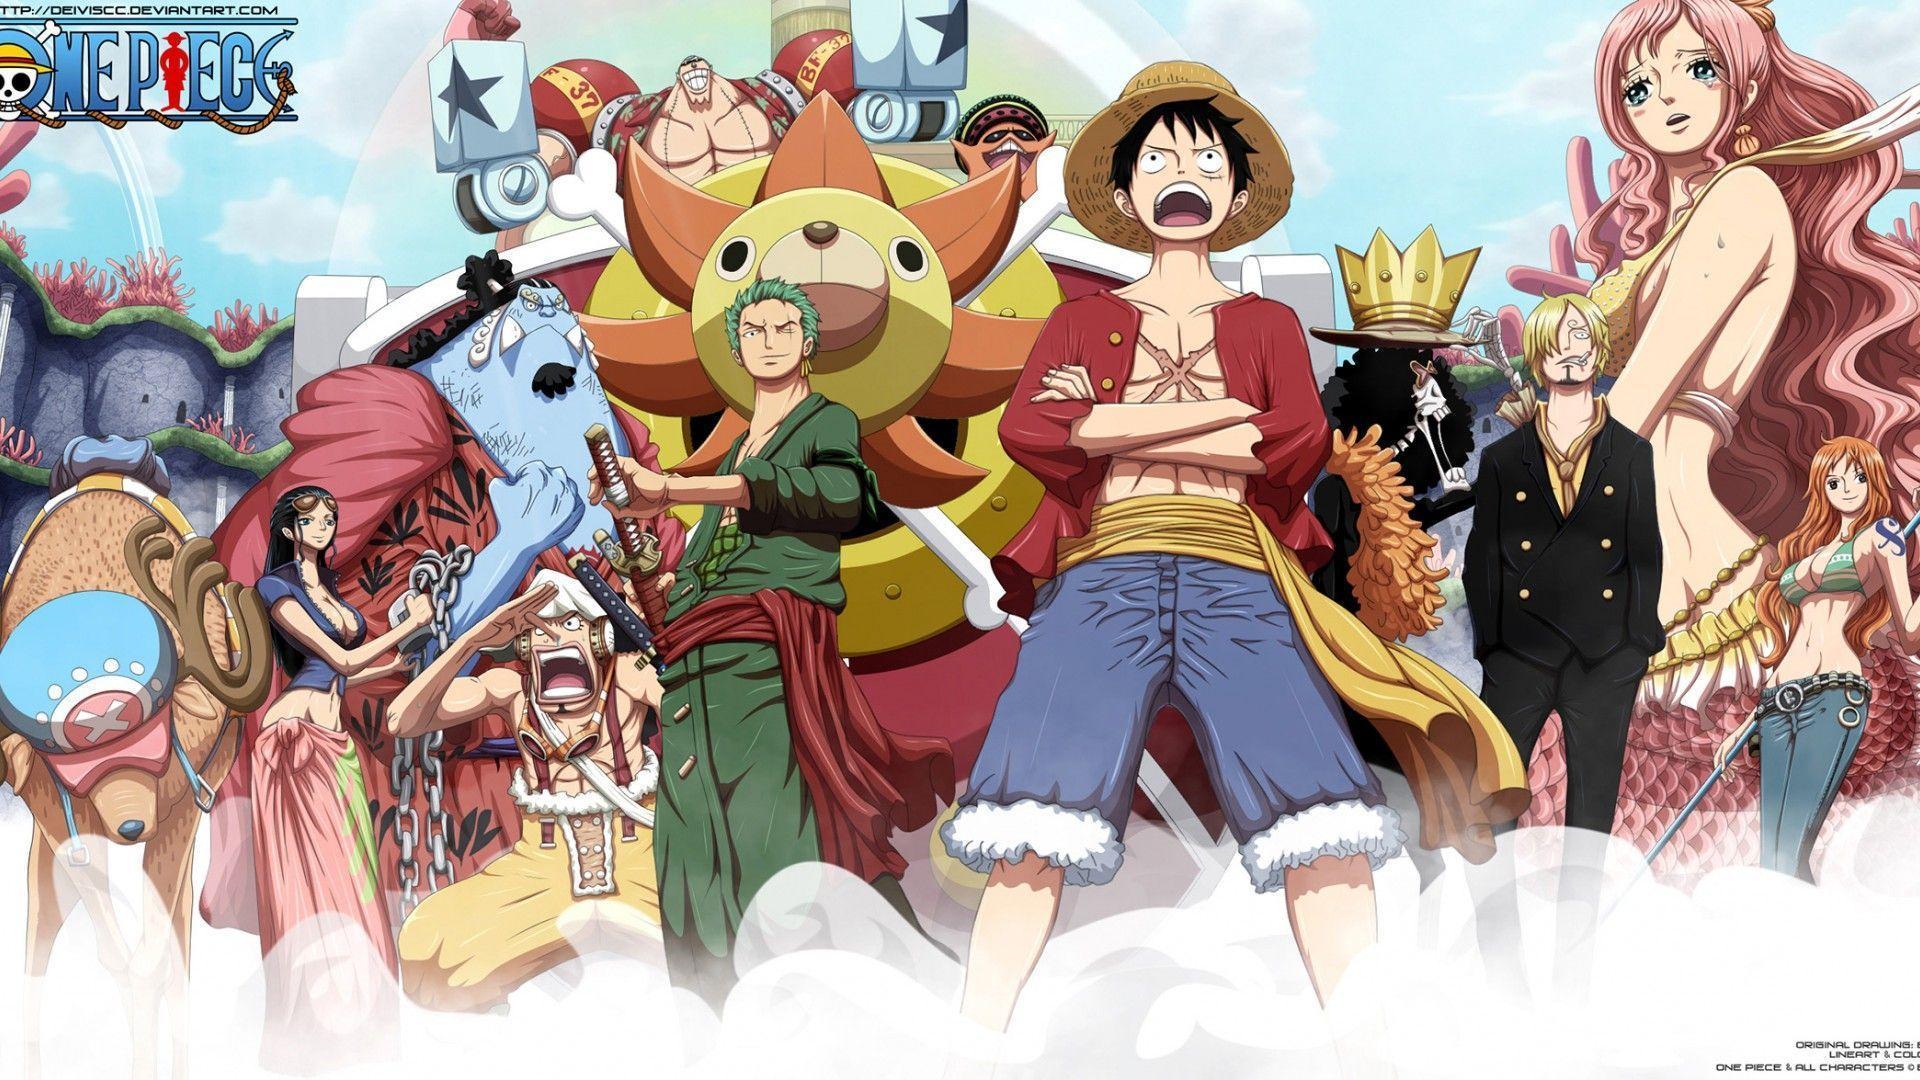 Muốn ngắm nhìn các hình nền One Piece độc đáo và đầy màu sắc không? Hãy check ngay hình nền One Piece tuyệt vời này! Chắc chắn sẽ để lại ấn tượng đẹp trong lòng bạn.